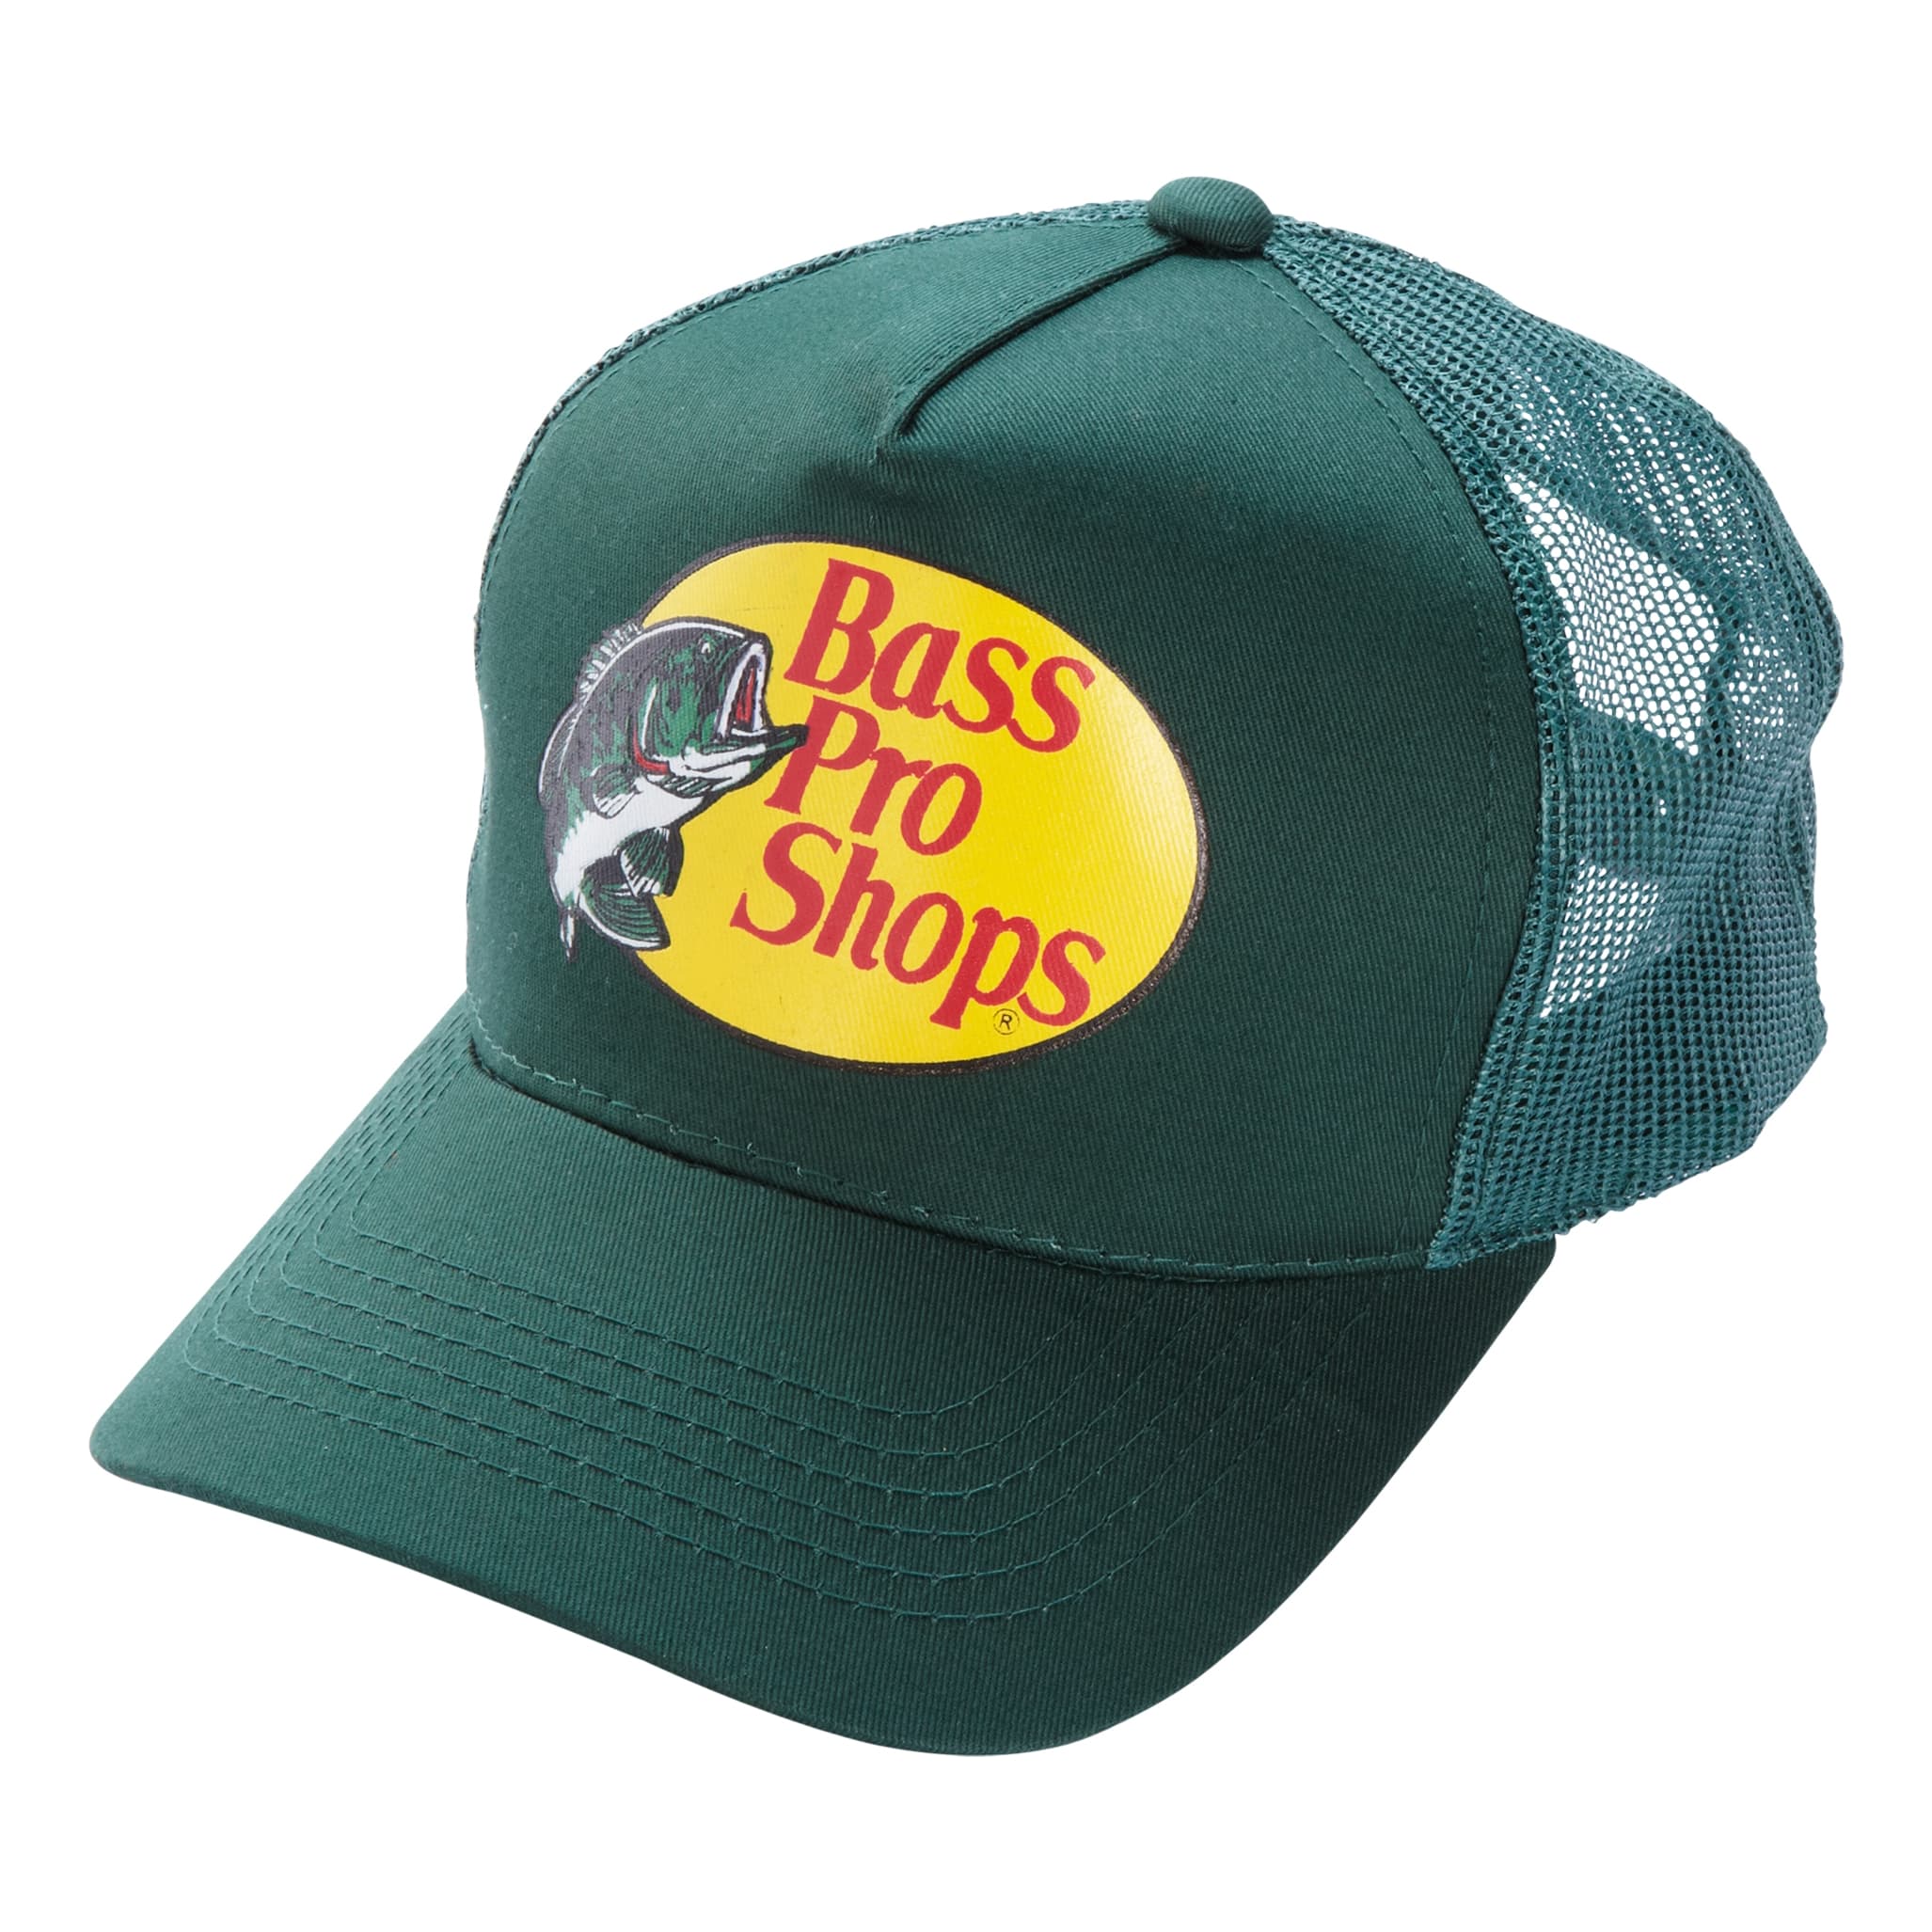 Bass Pro Shops® Trucker Cap - Dark Green